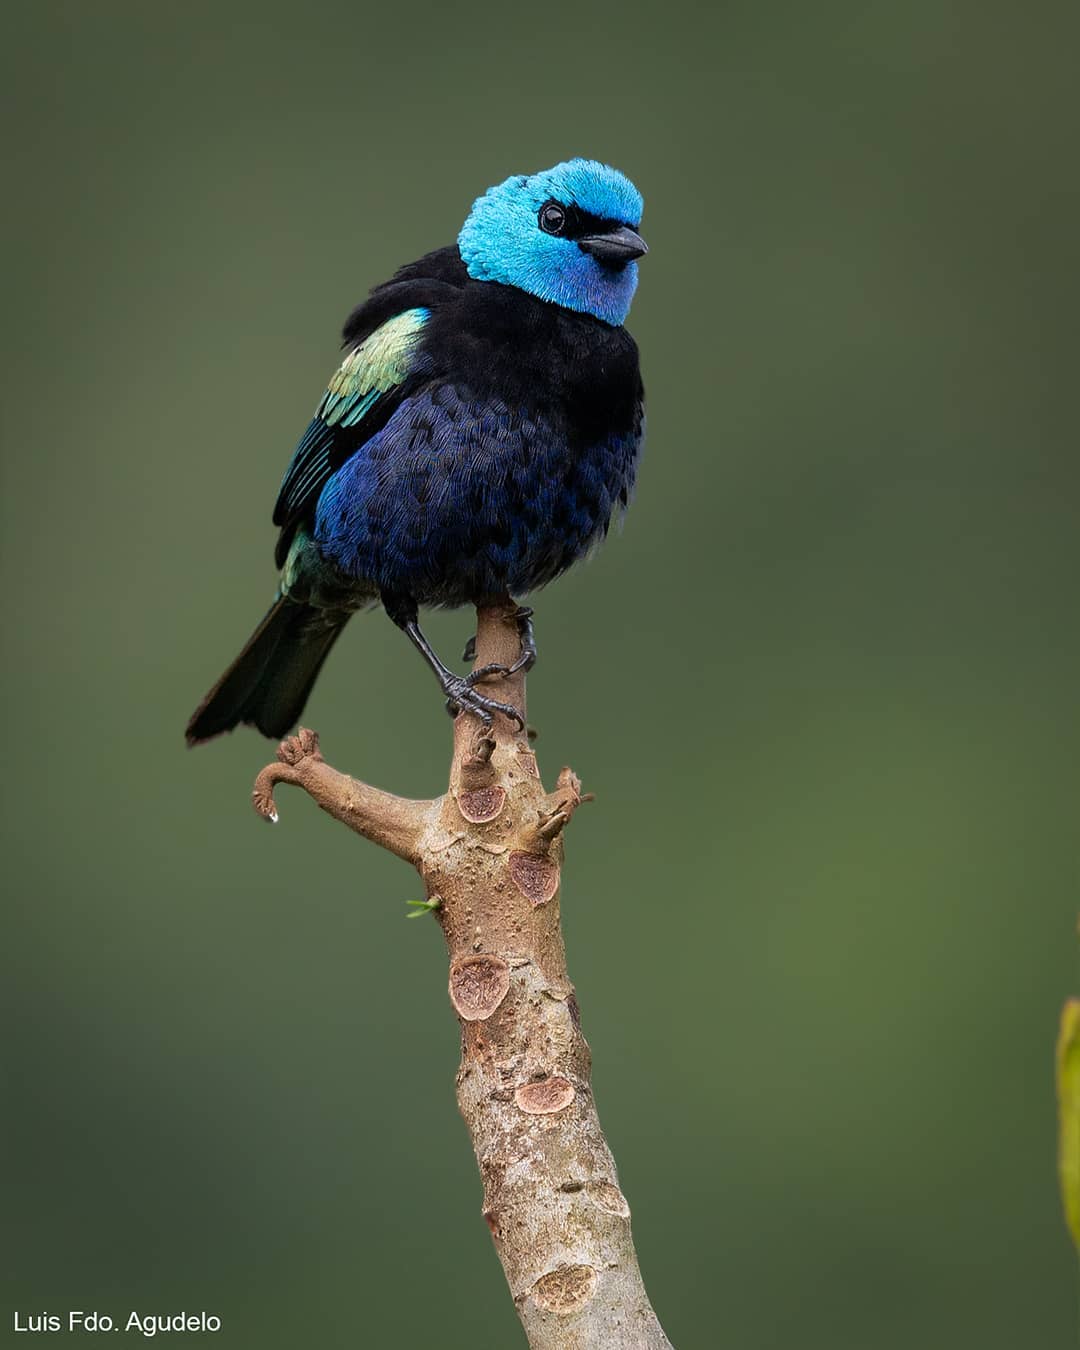 Красивые птицы на снимках Луиса Фернандо Агудело